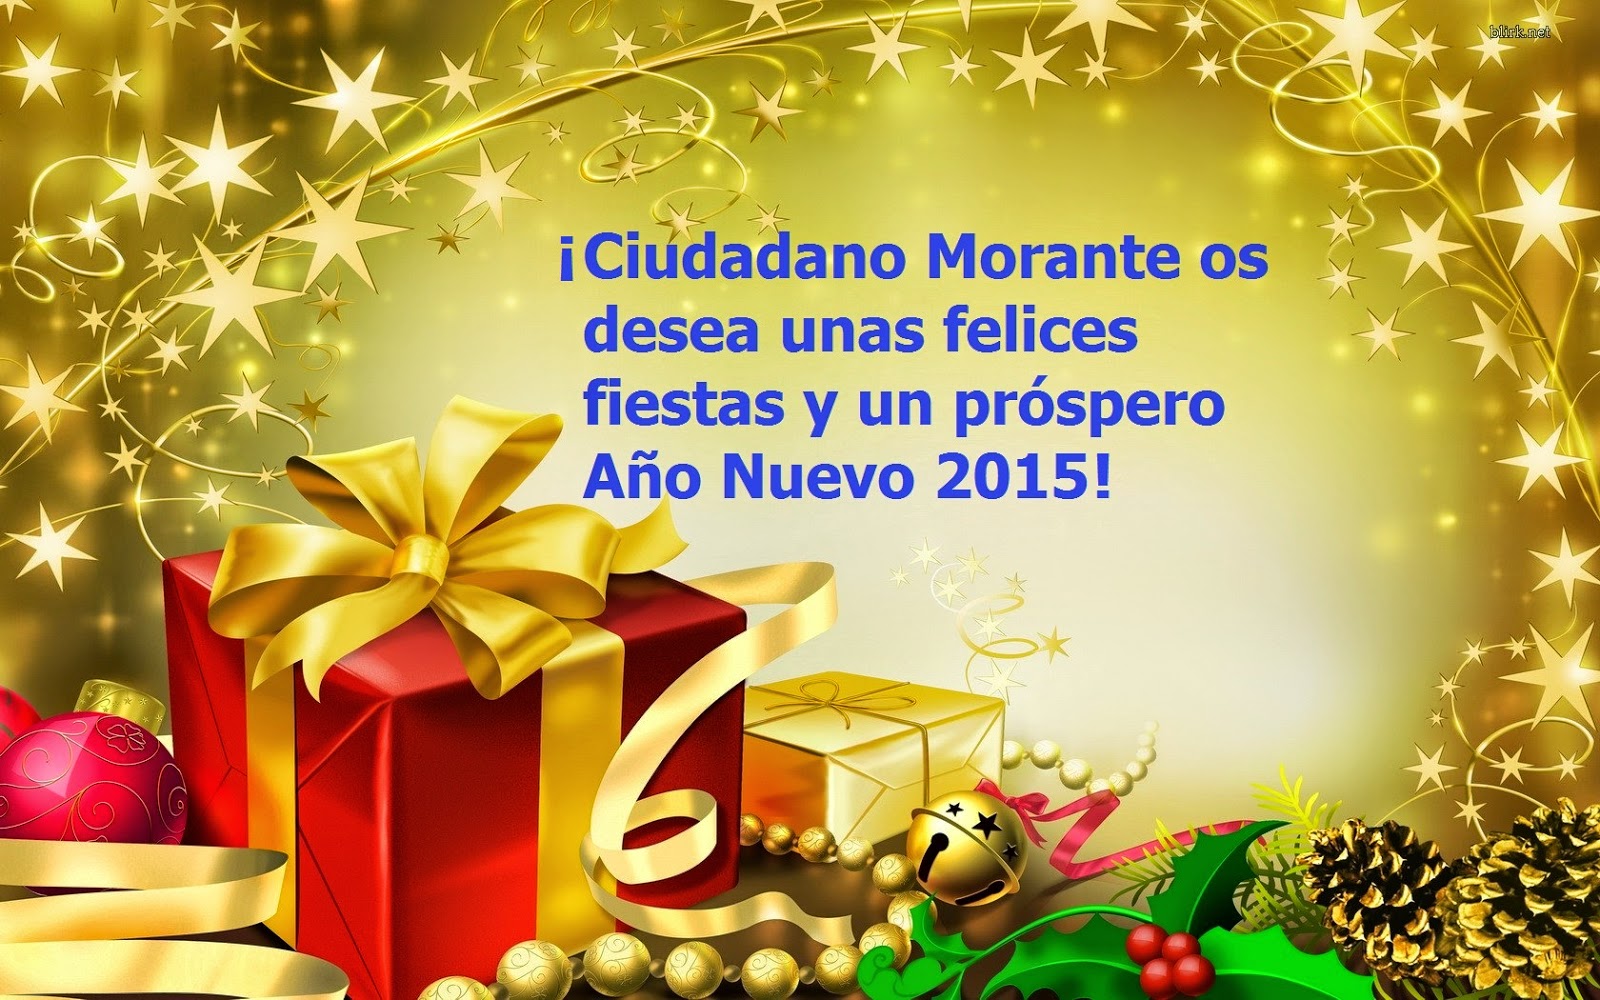 Ciudadano Morante os desea unas Felices Fiestas y un próspero Año Nuevo